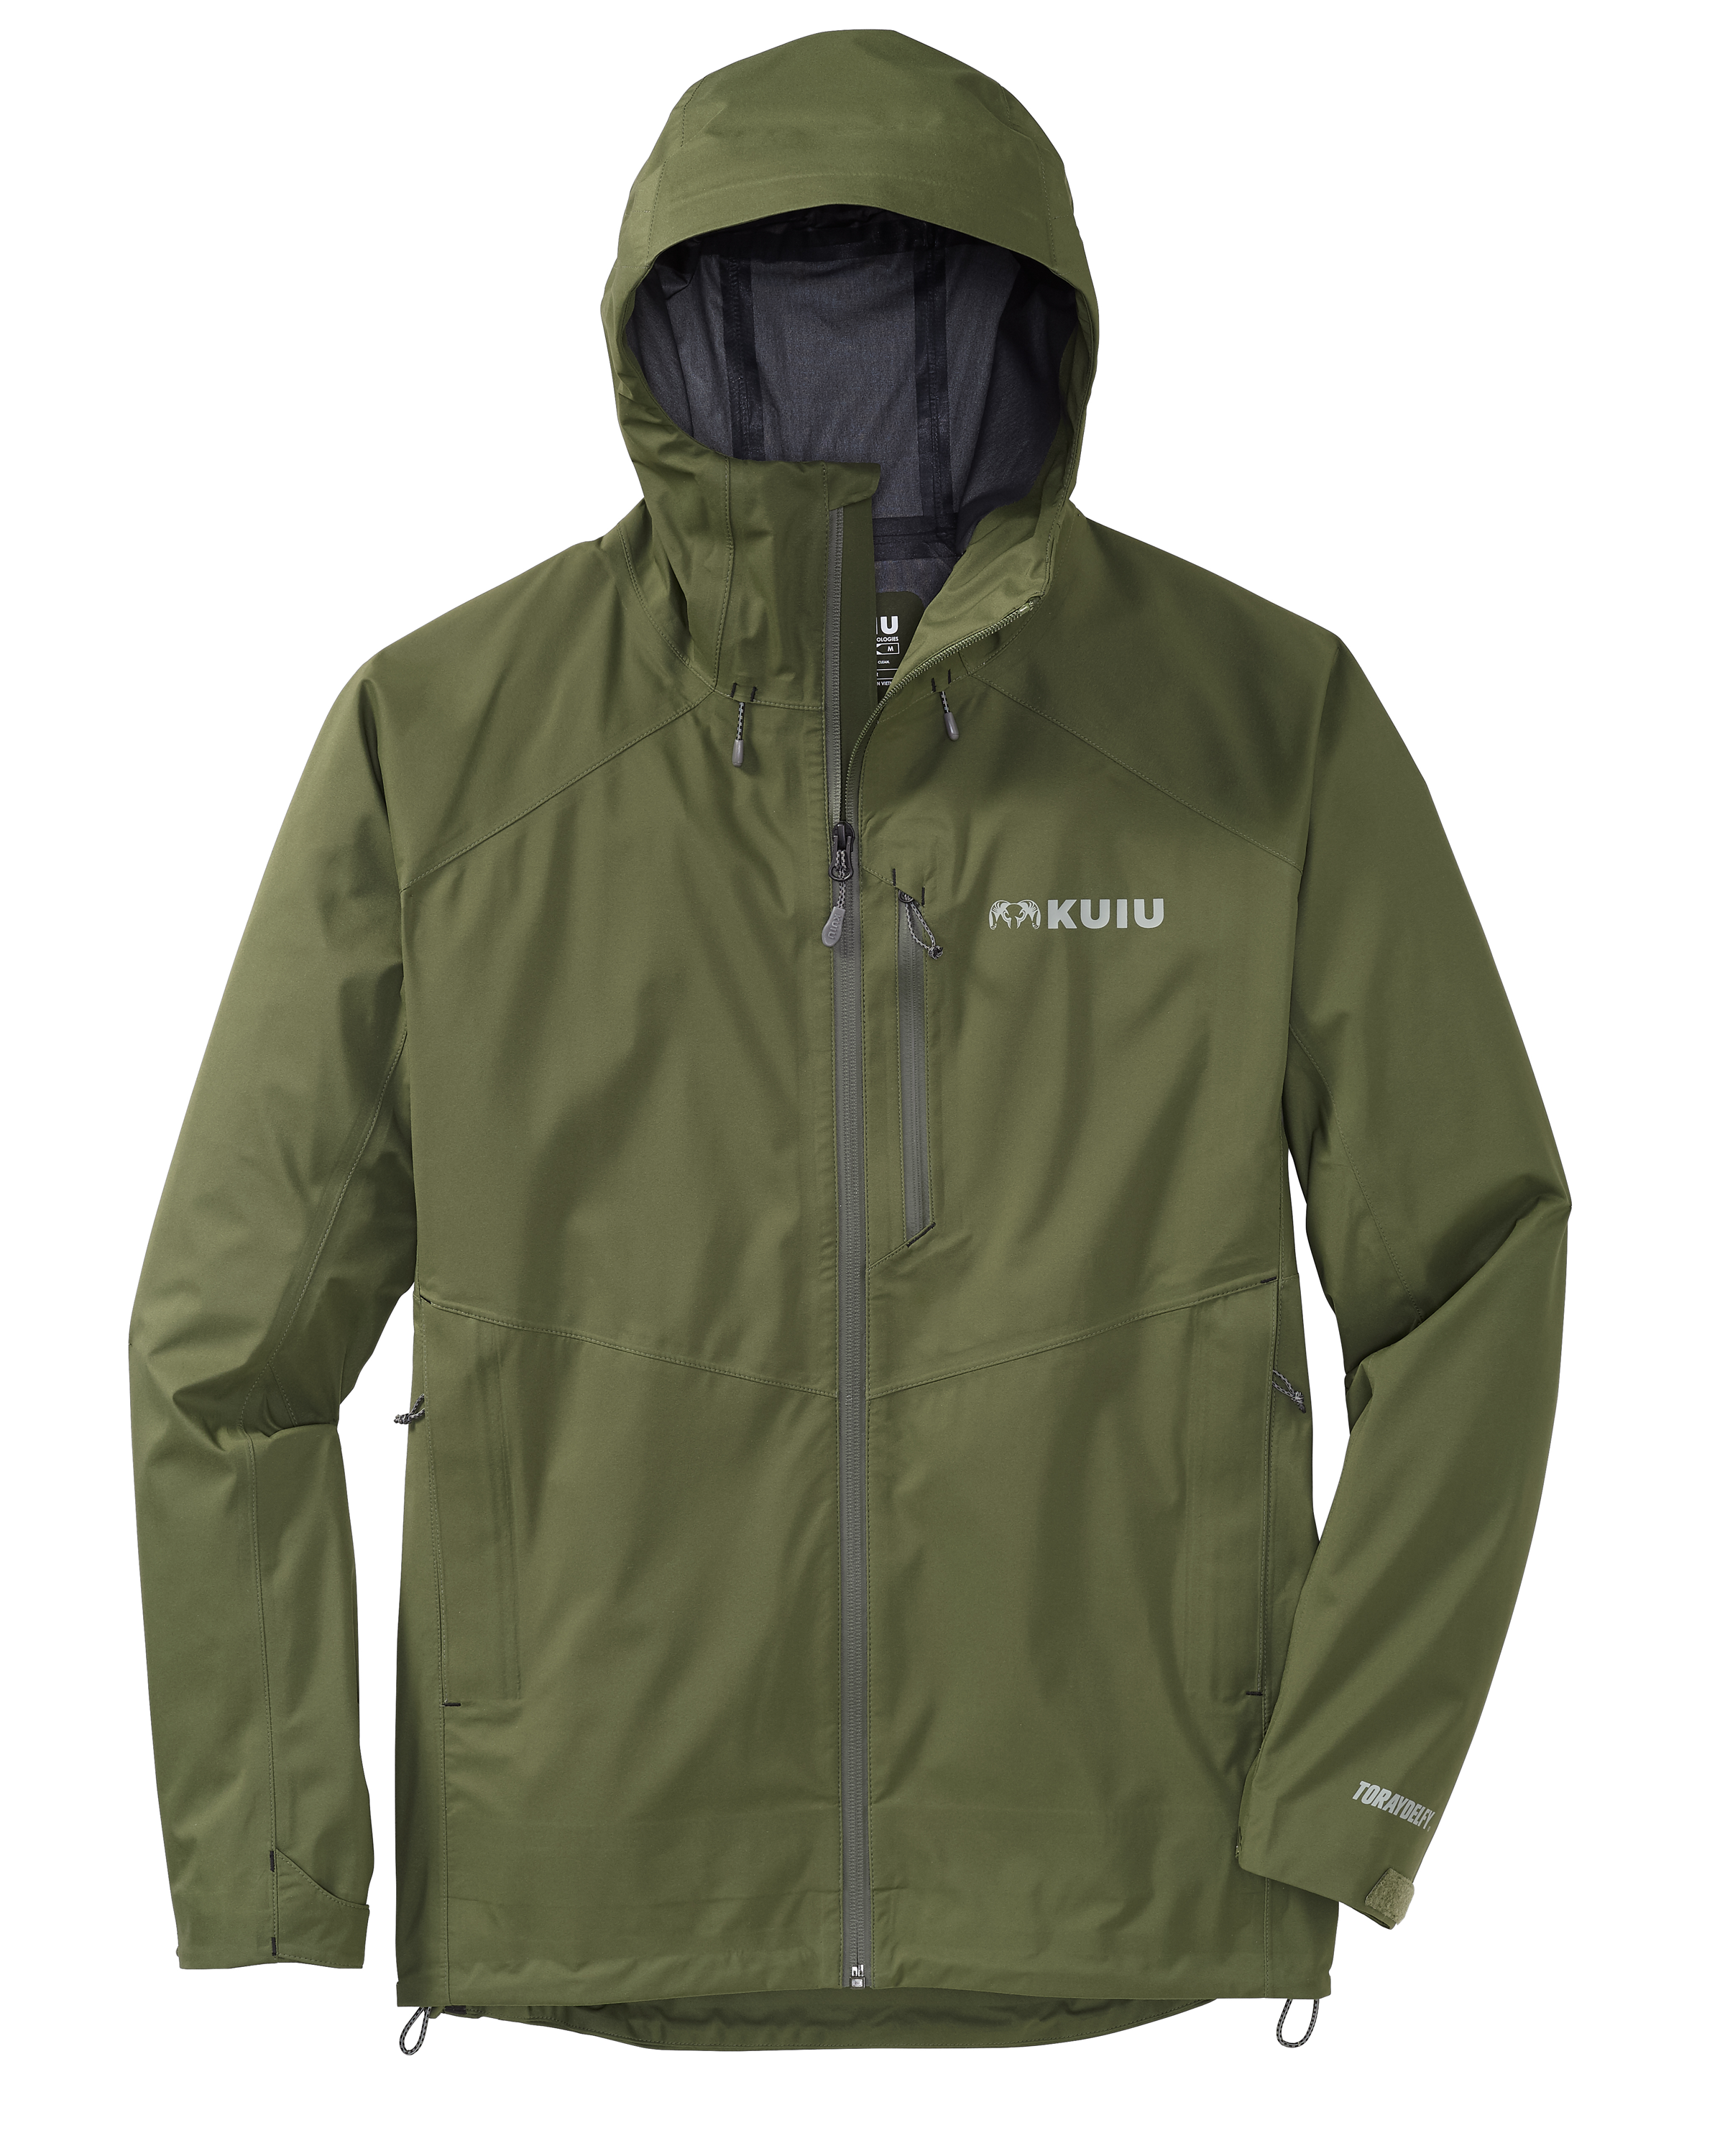 KUIU Northridge Rain Hunting Jacket in Olive | Size Small